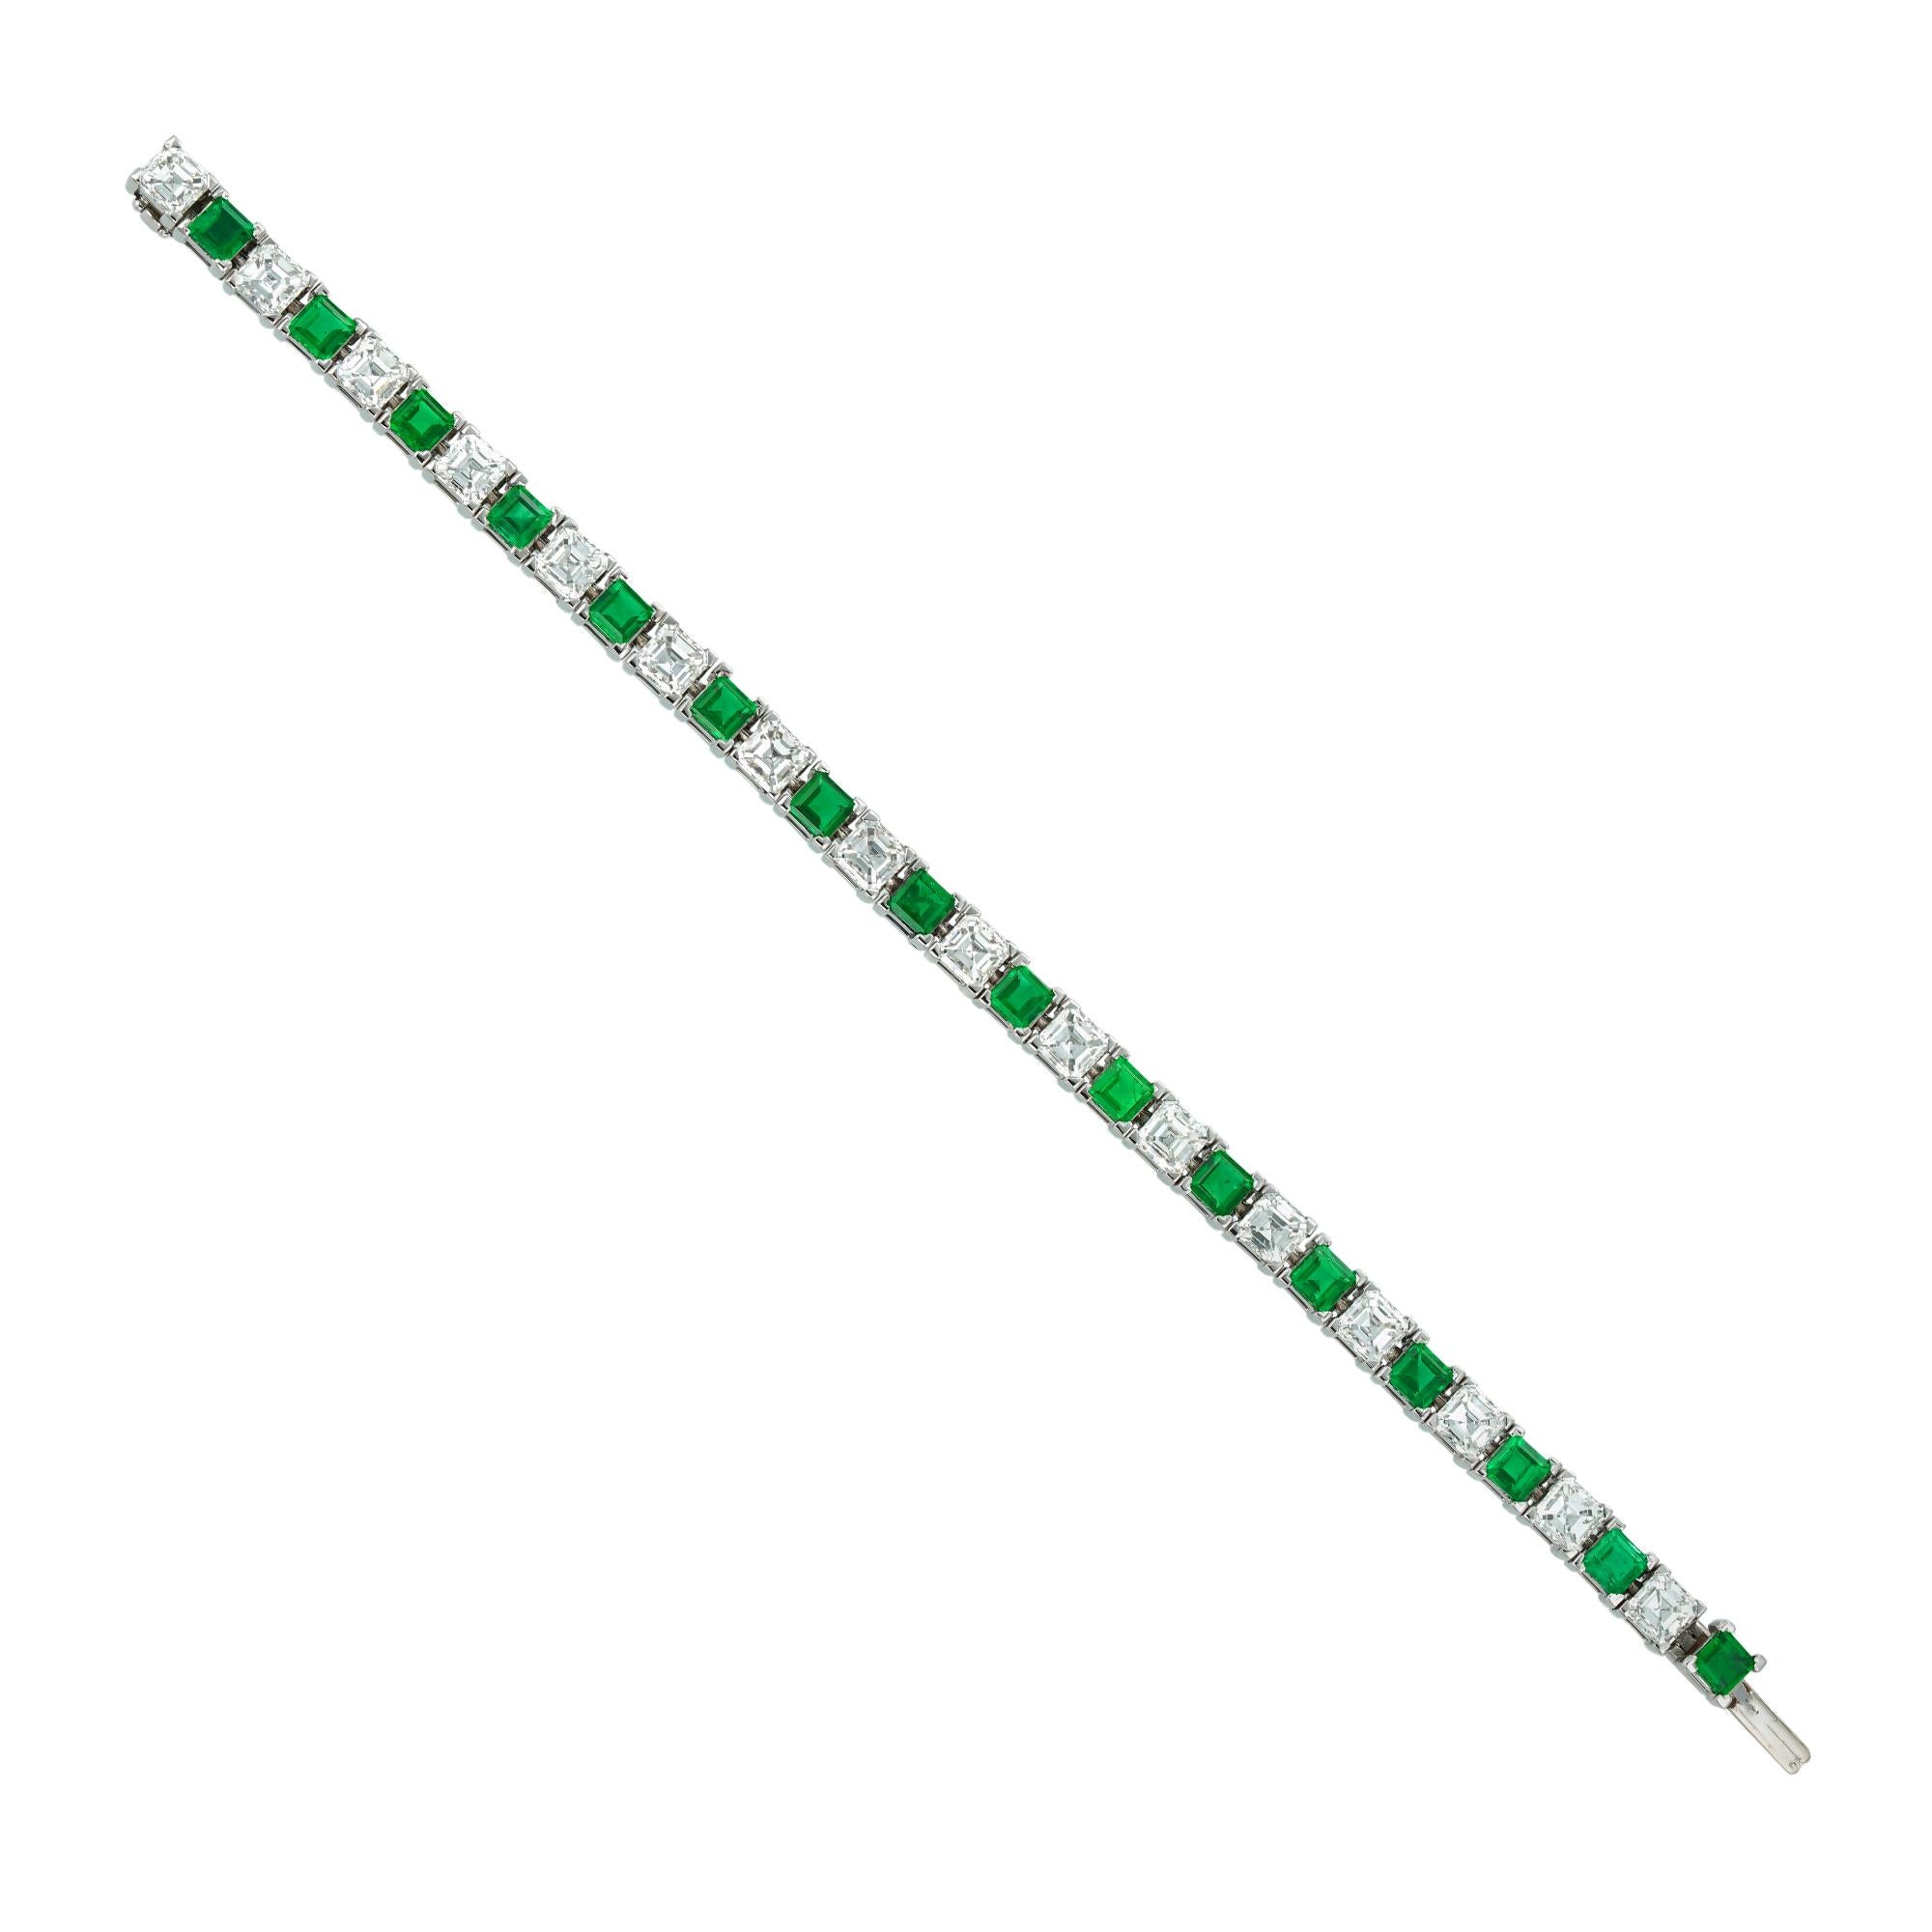 Ein bedeutendes Armband mit Smaragden und Diamanten im Assher-Schliff von Asprey, bestehend aus sechzehn Diamanten im Assher-Schliff mit einem Gesamtgewicht von 8,44 Karat, die abwechselnd mit sechzehn Smaragden im Quadratschliff mit einem